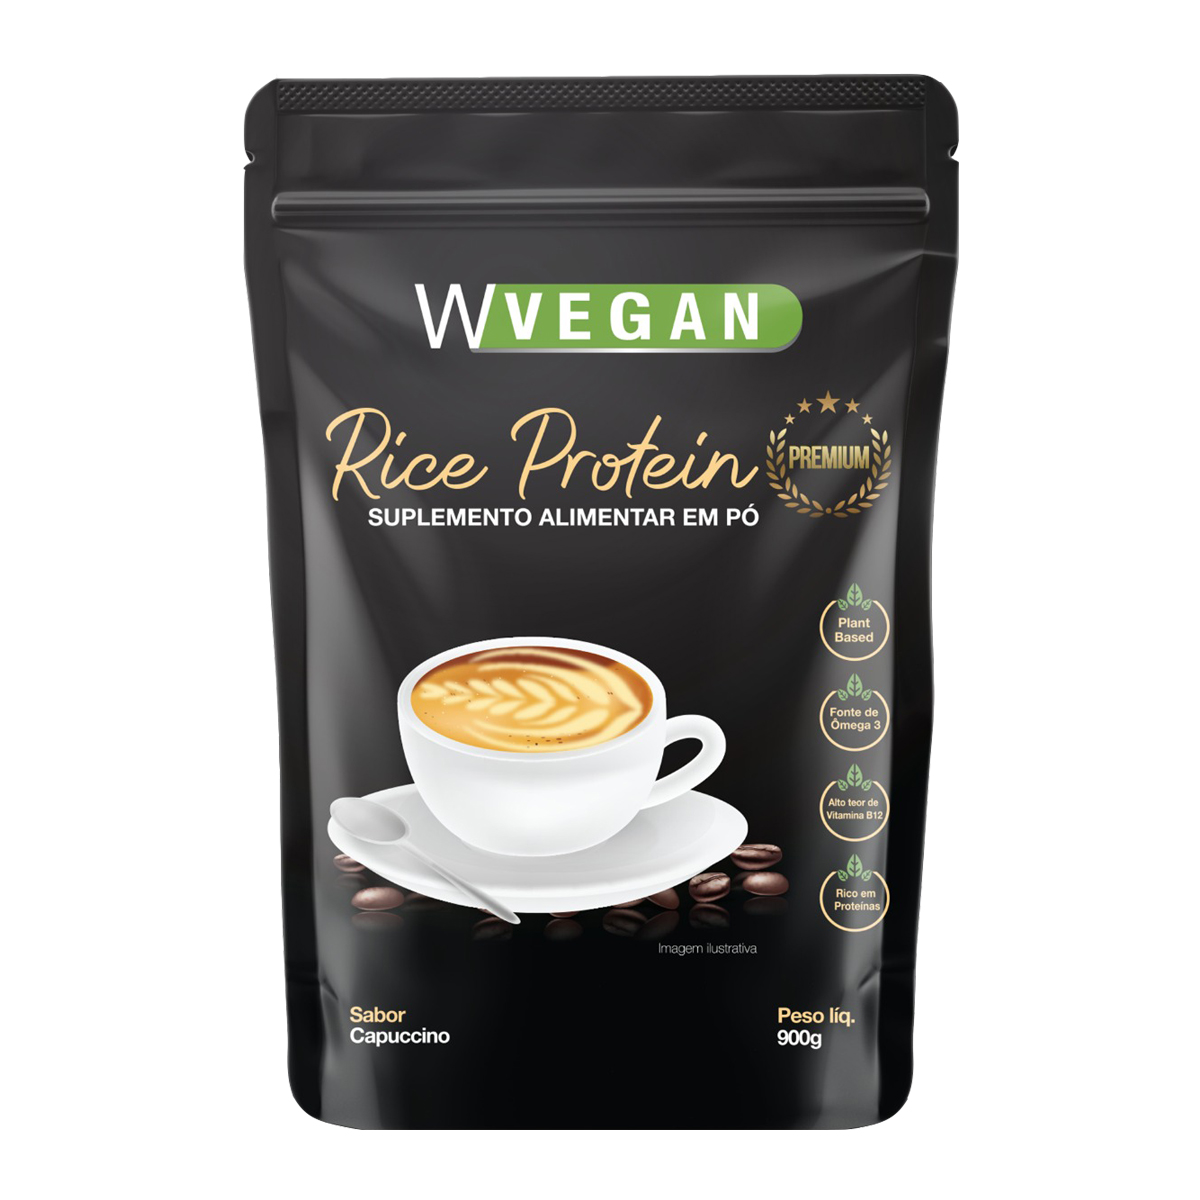 Rice Protein Premium 900g Embalagem Refil WVegan Sabor Capuccino Vegano